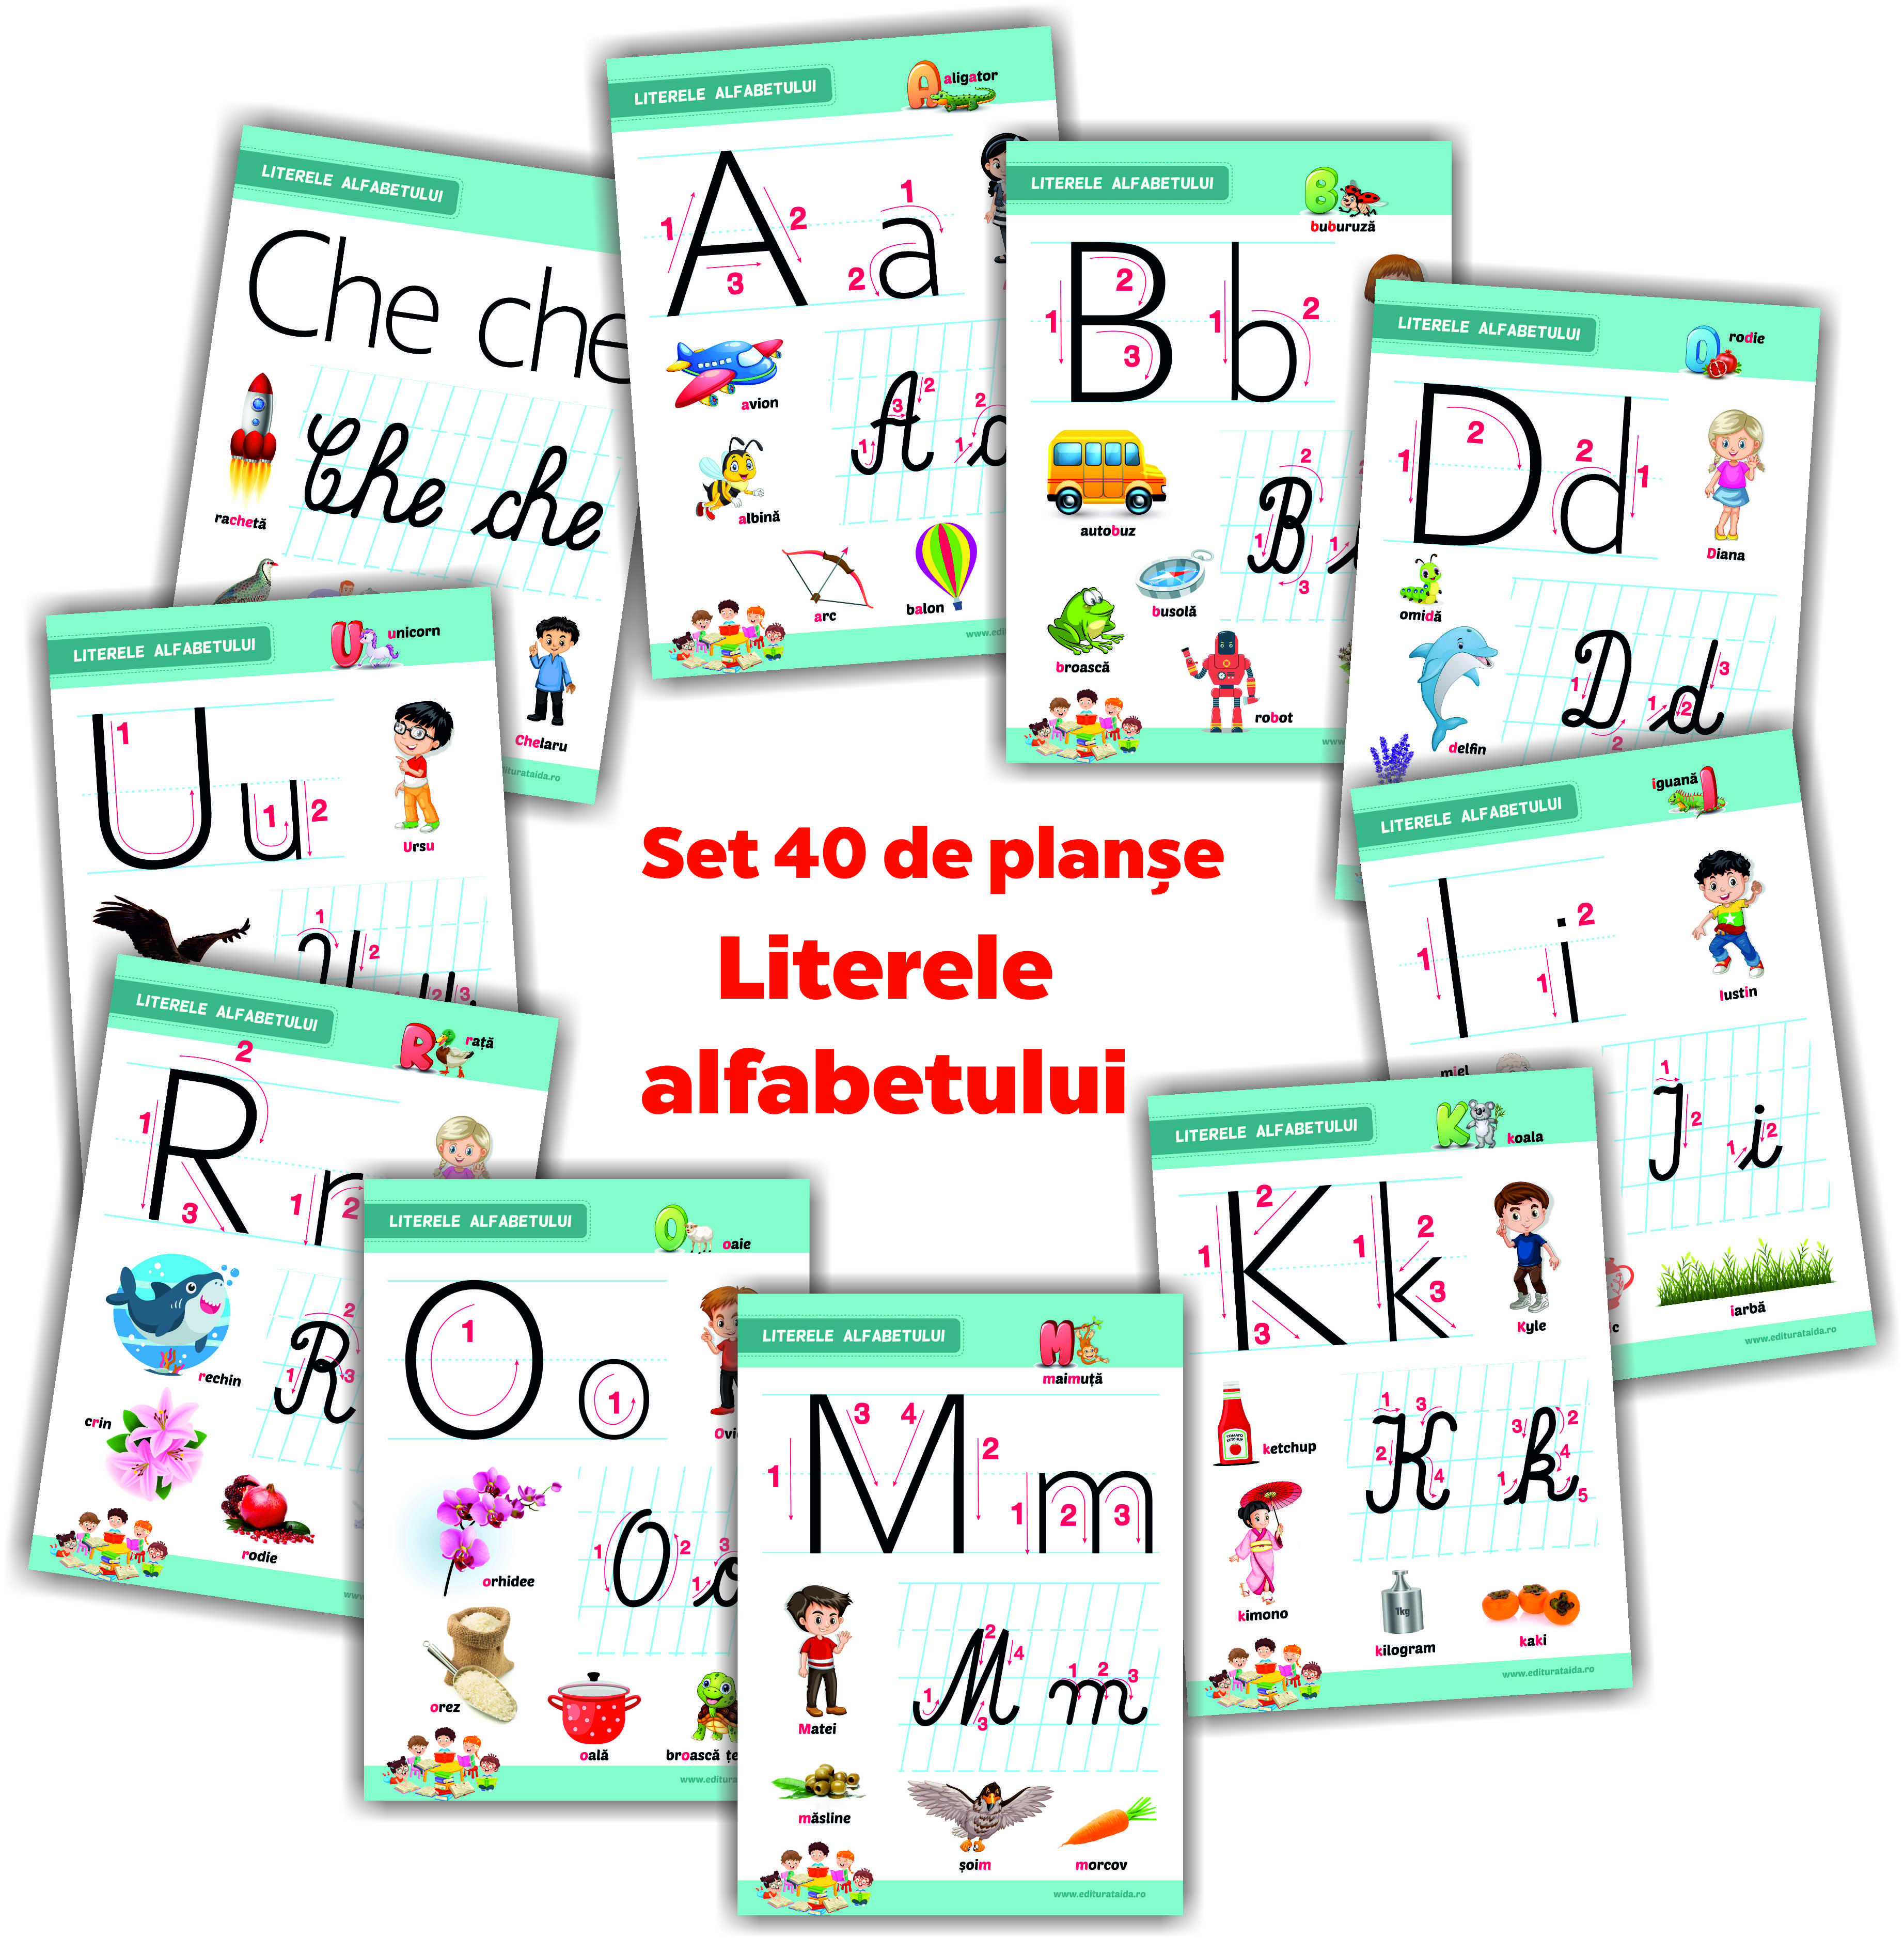 Literele alfabetului - set 40 de planșe didactice pentru clasa pregătitoare și pentru clasa I